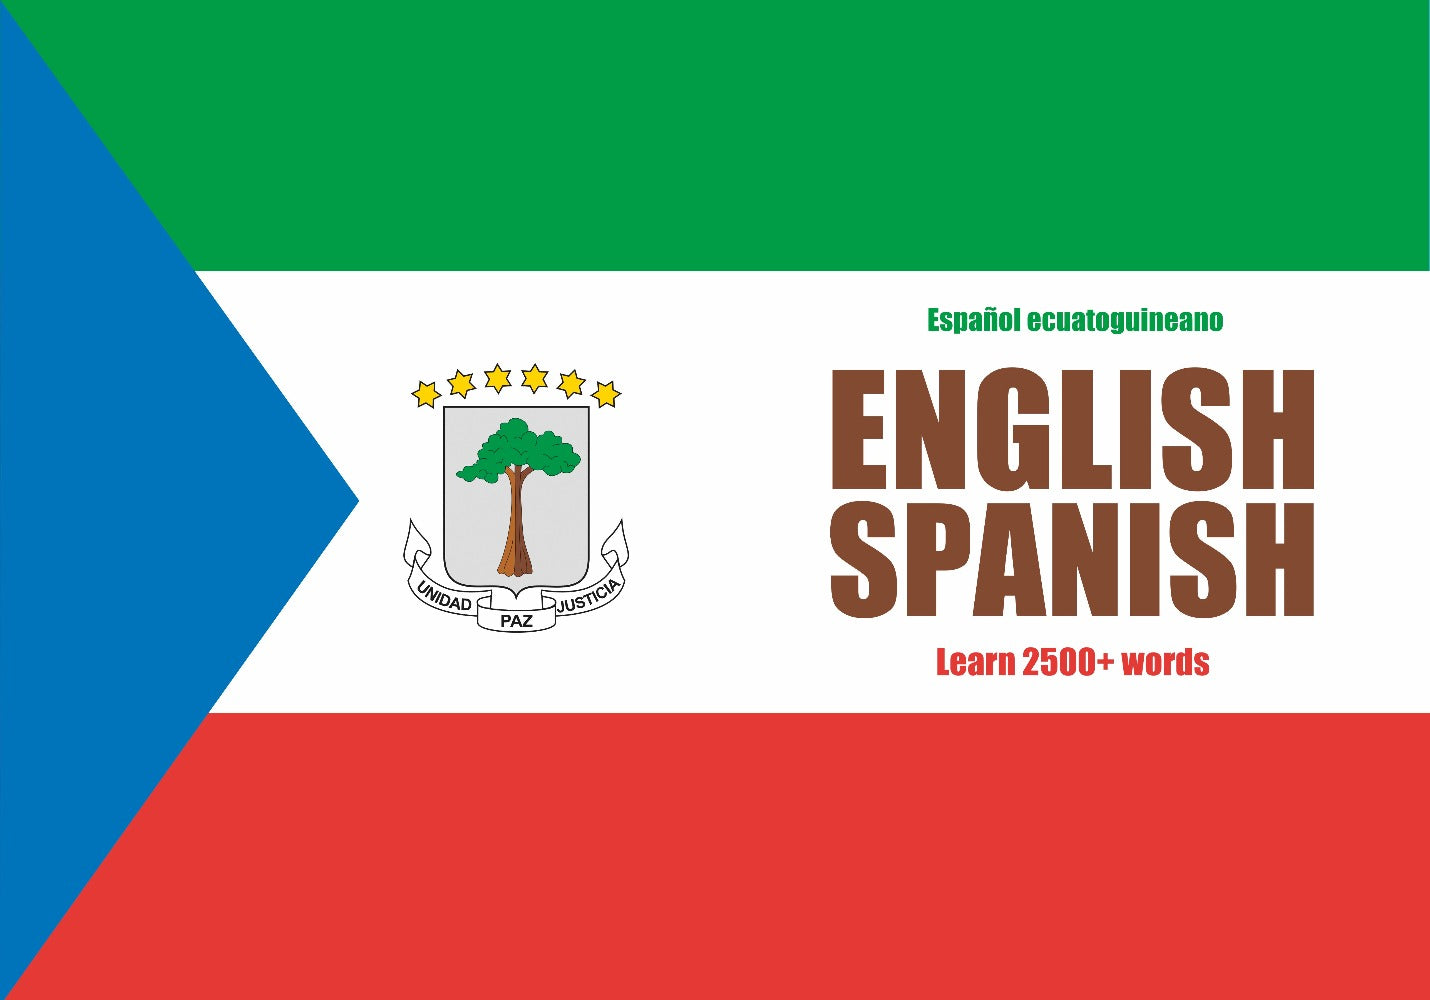 Equatoguinean Spanish language notebook cover